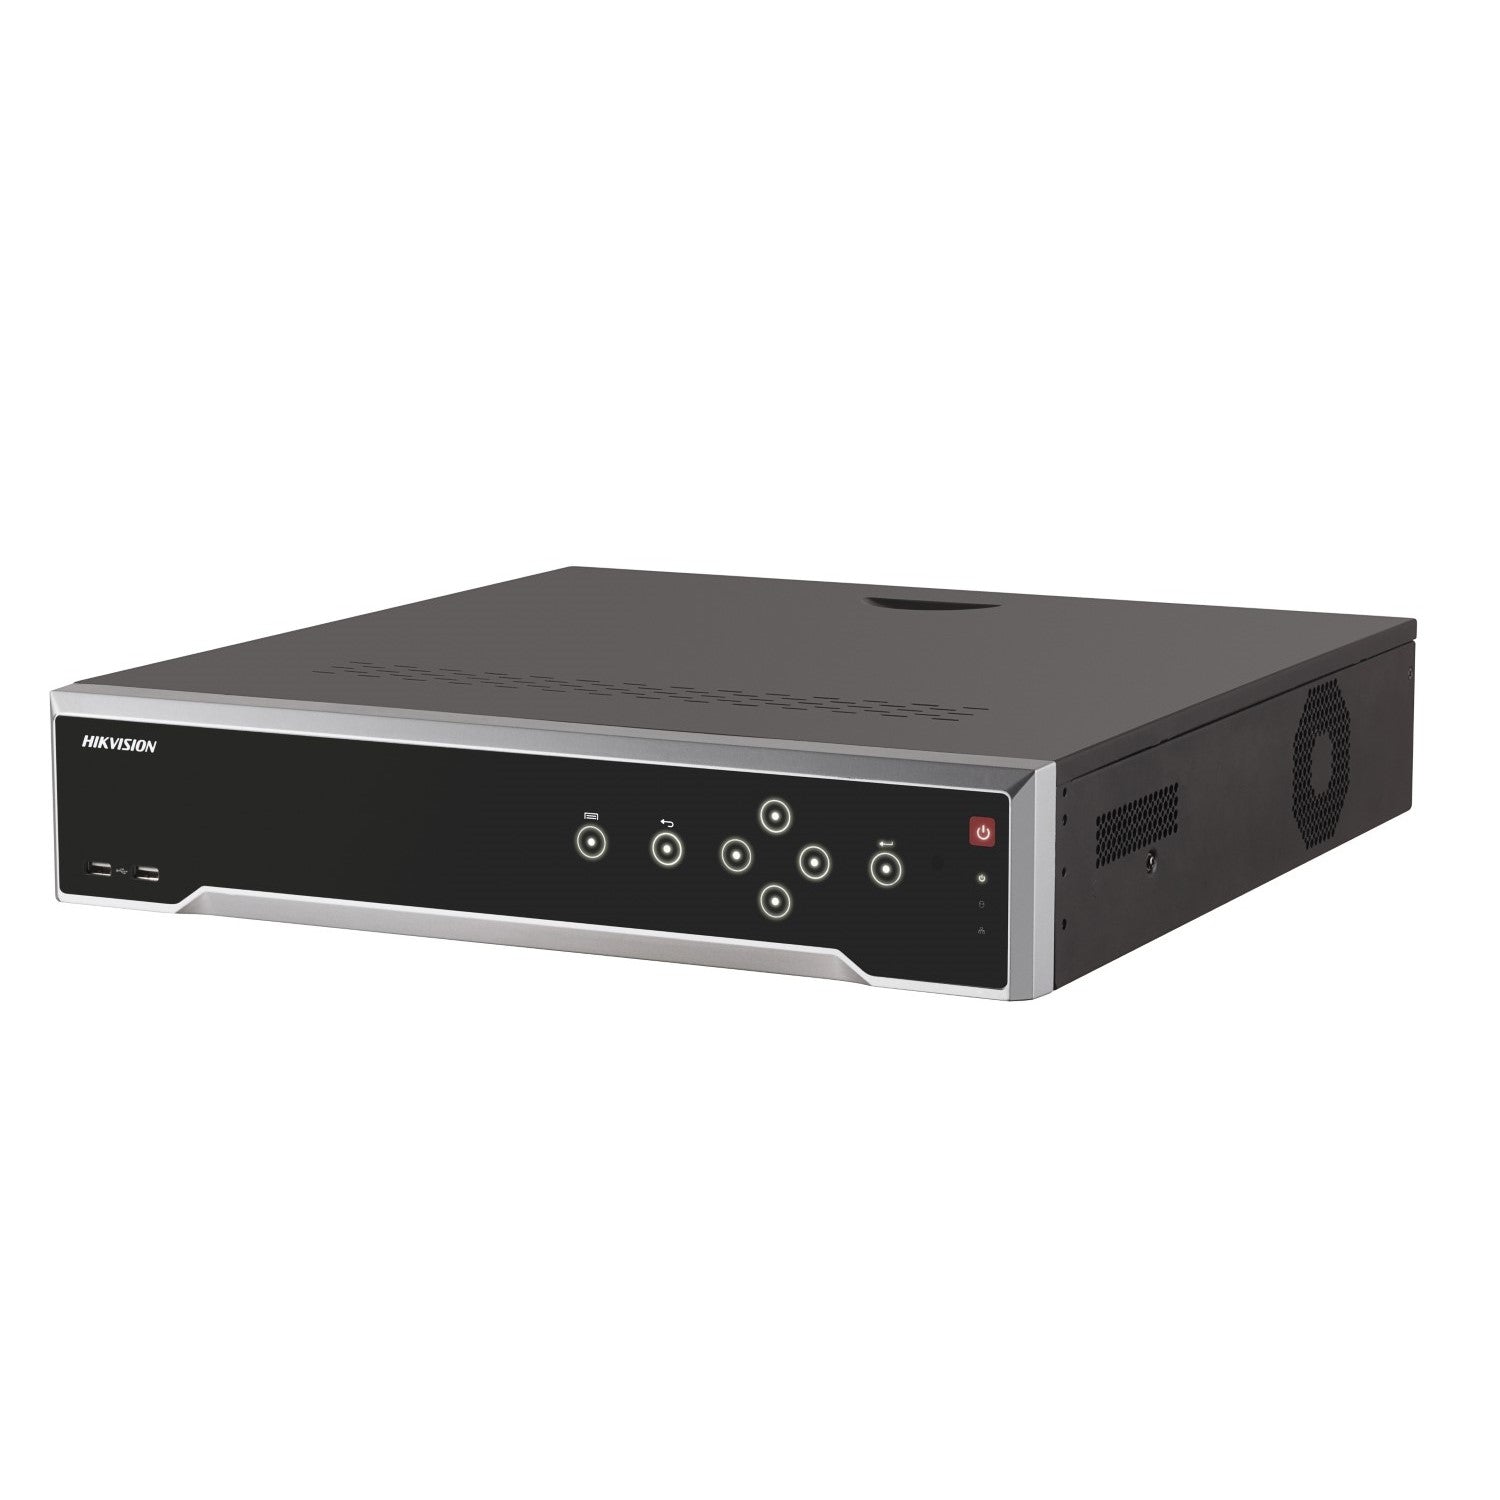 Hikvision DS-7732NI-I4/16P सीरीज 32ch NVR, 16 PoE पोर्ट, 256Mbps, H.265, 4K, 1.5RU, 4 x HDD बे + 3TB